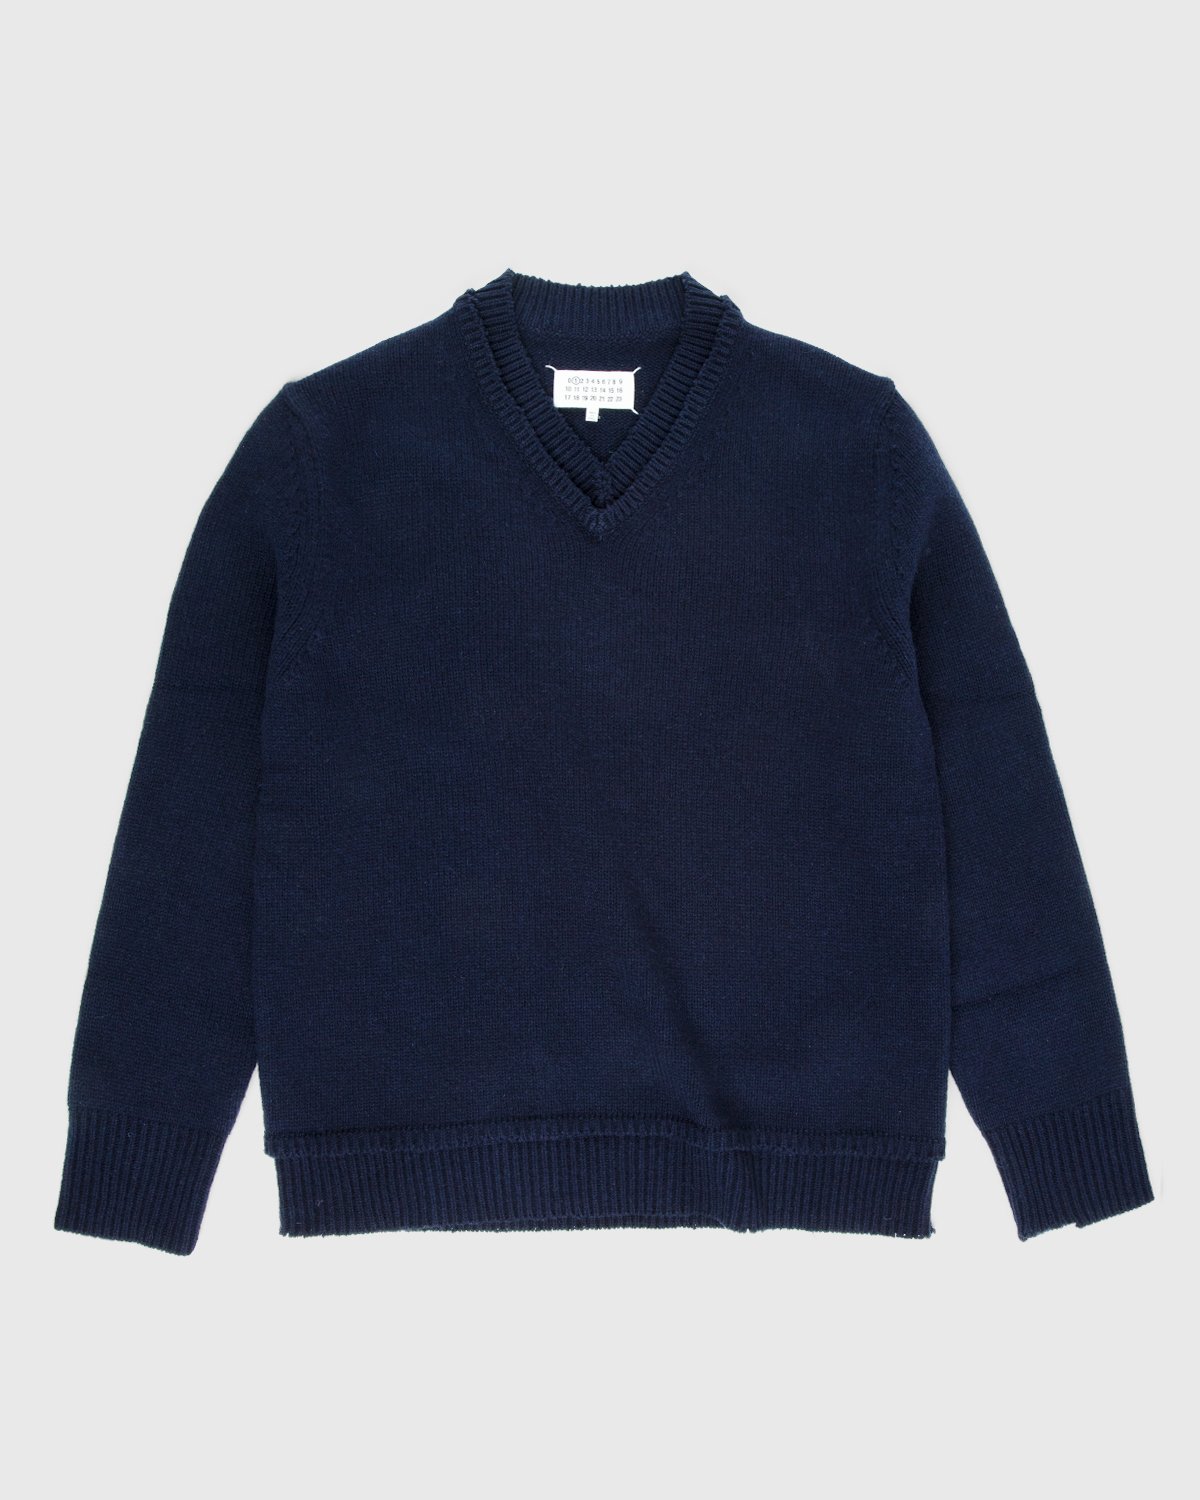 Maison Margiela - Sweater Navy - Clothing - Blue - Image 1